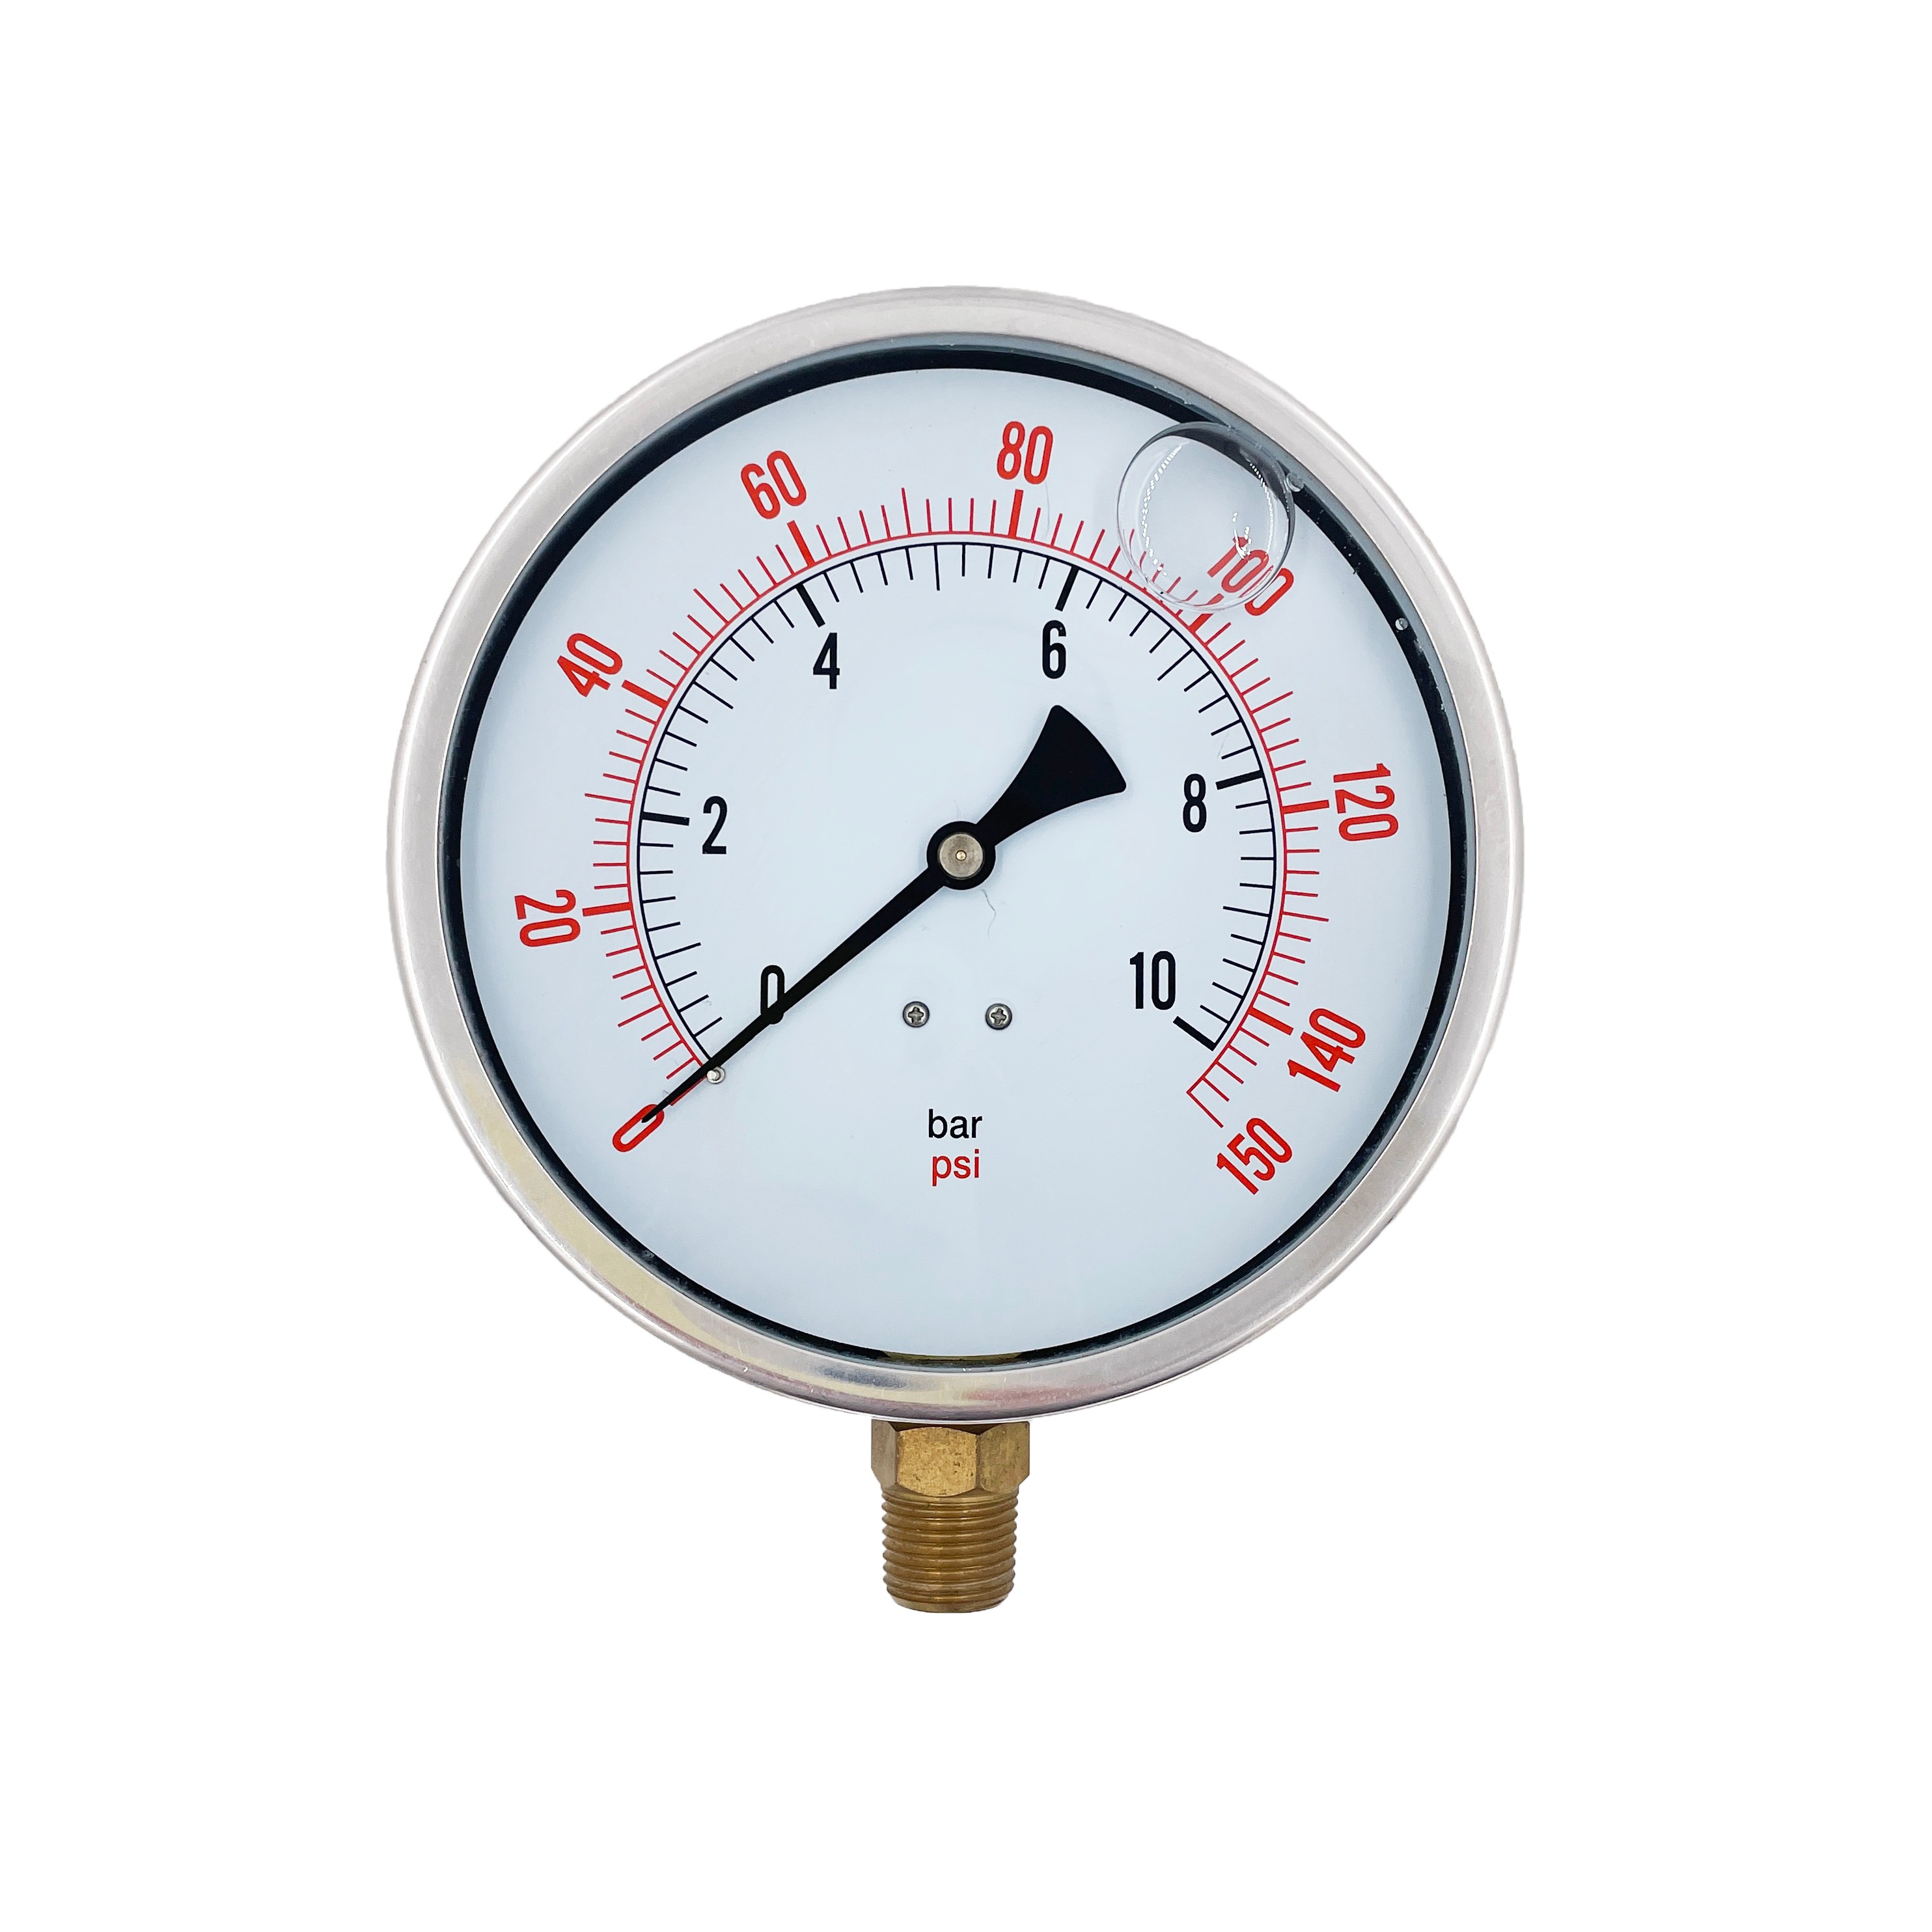 Y150 radial half stainless steel oil filled pressure gauge 